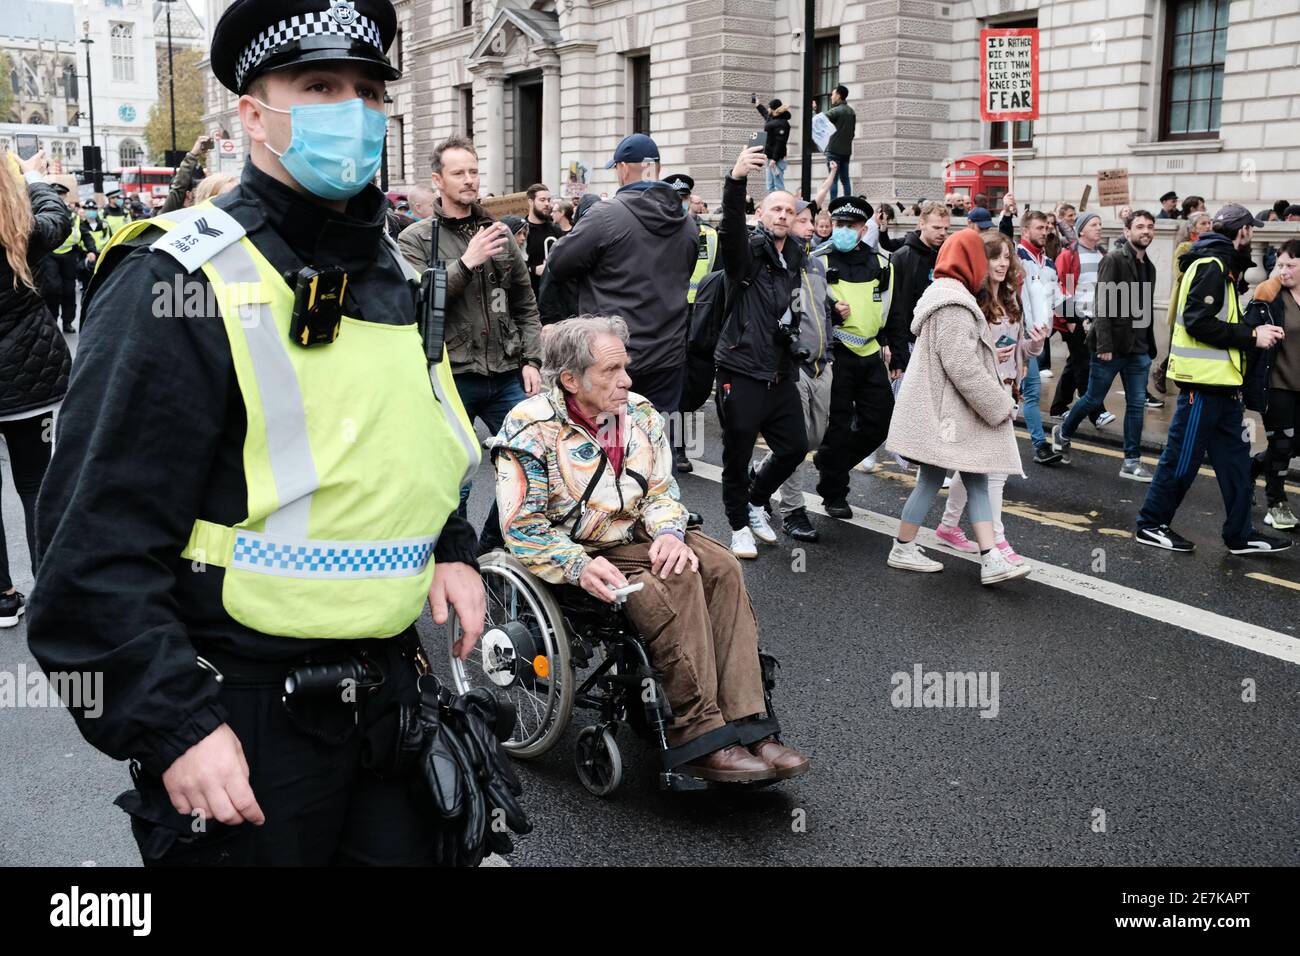 LONDRES, LE 24 OCTOBRE 2020 : manifestation anti-verrouillage dans le centre de Londres en réponse aux nouvelles restrictions de verrouillage des gouvernements concernant le virus. Banque D'Images